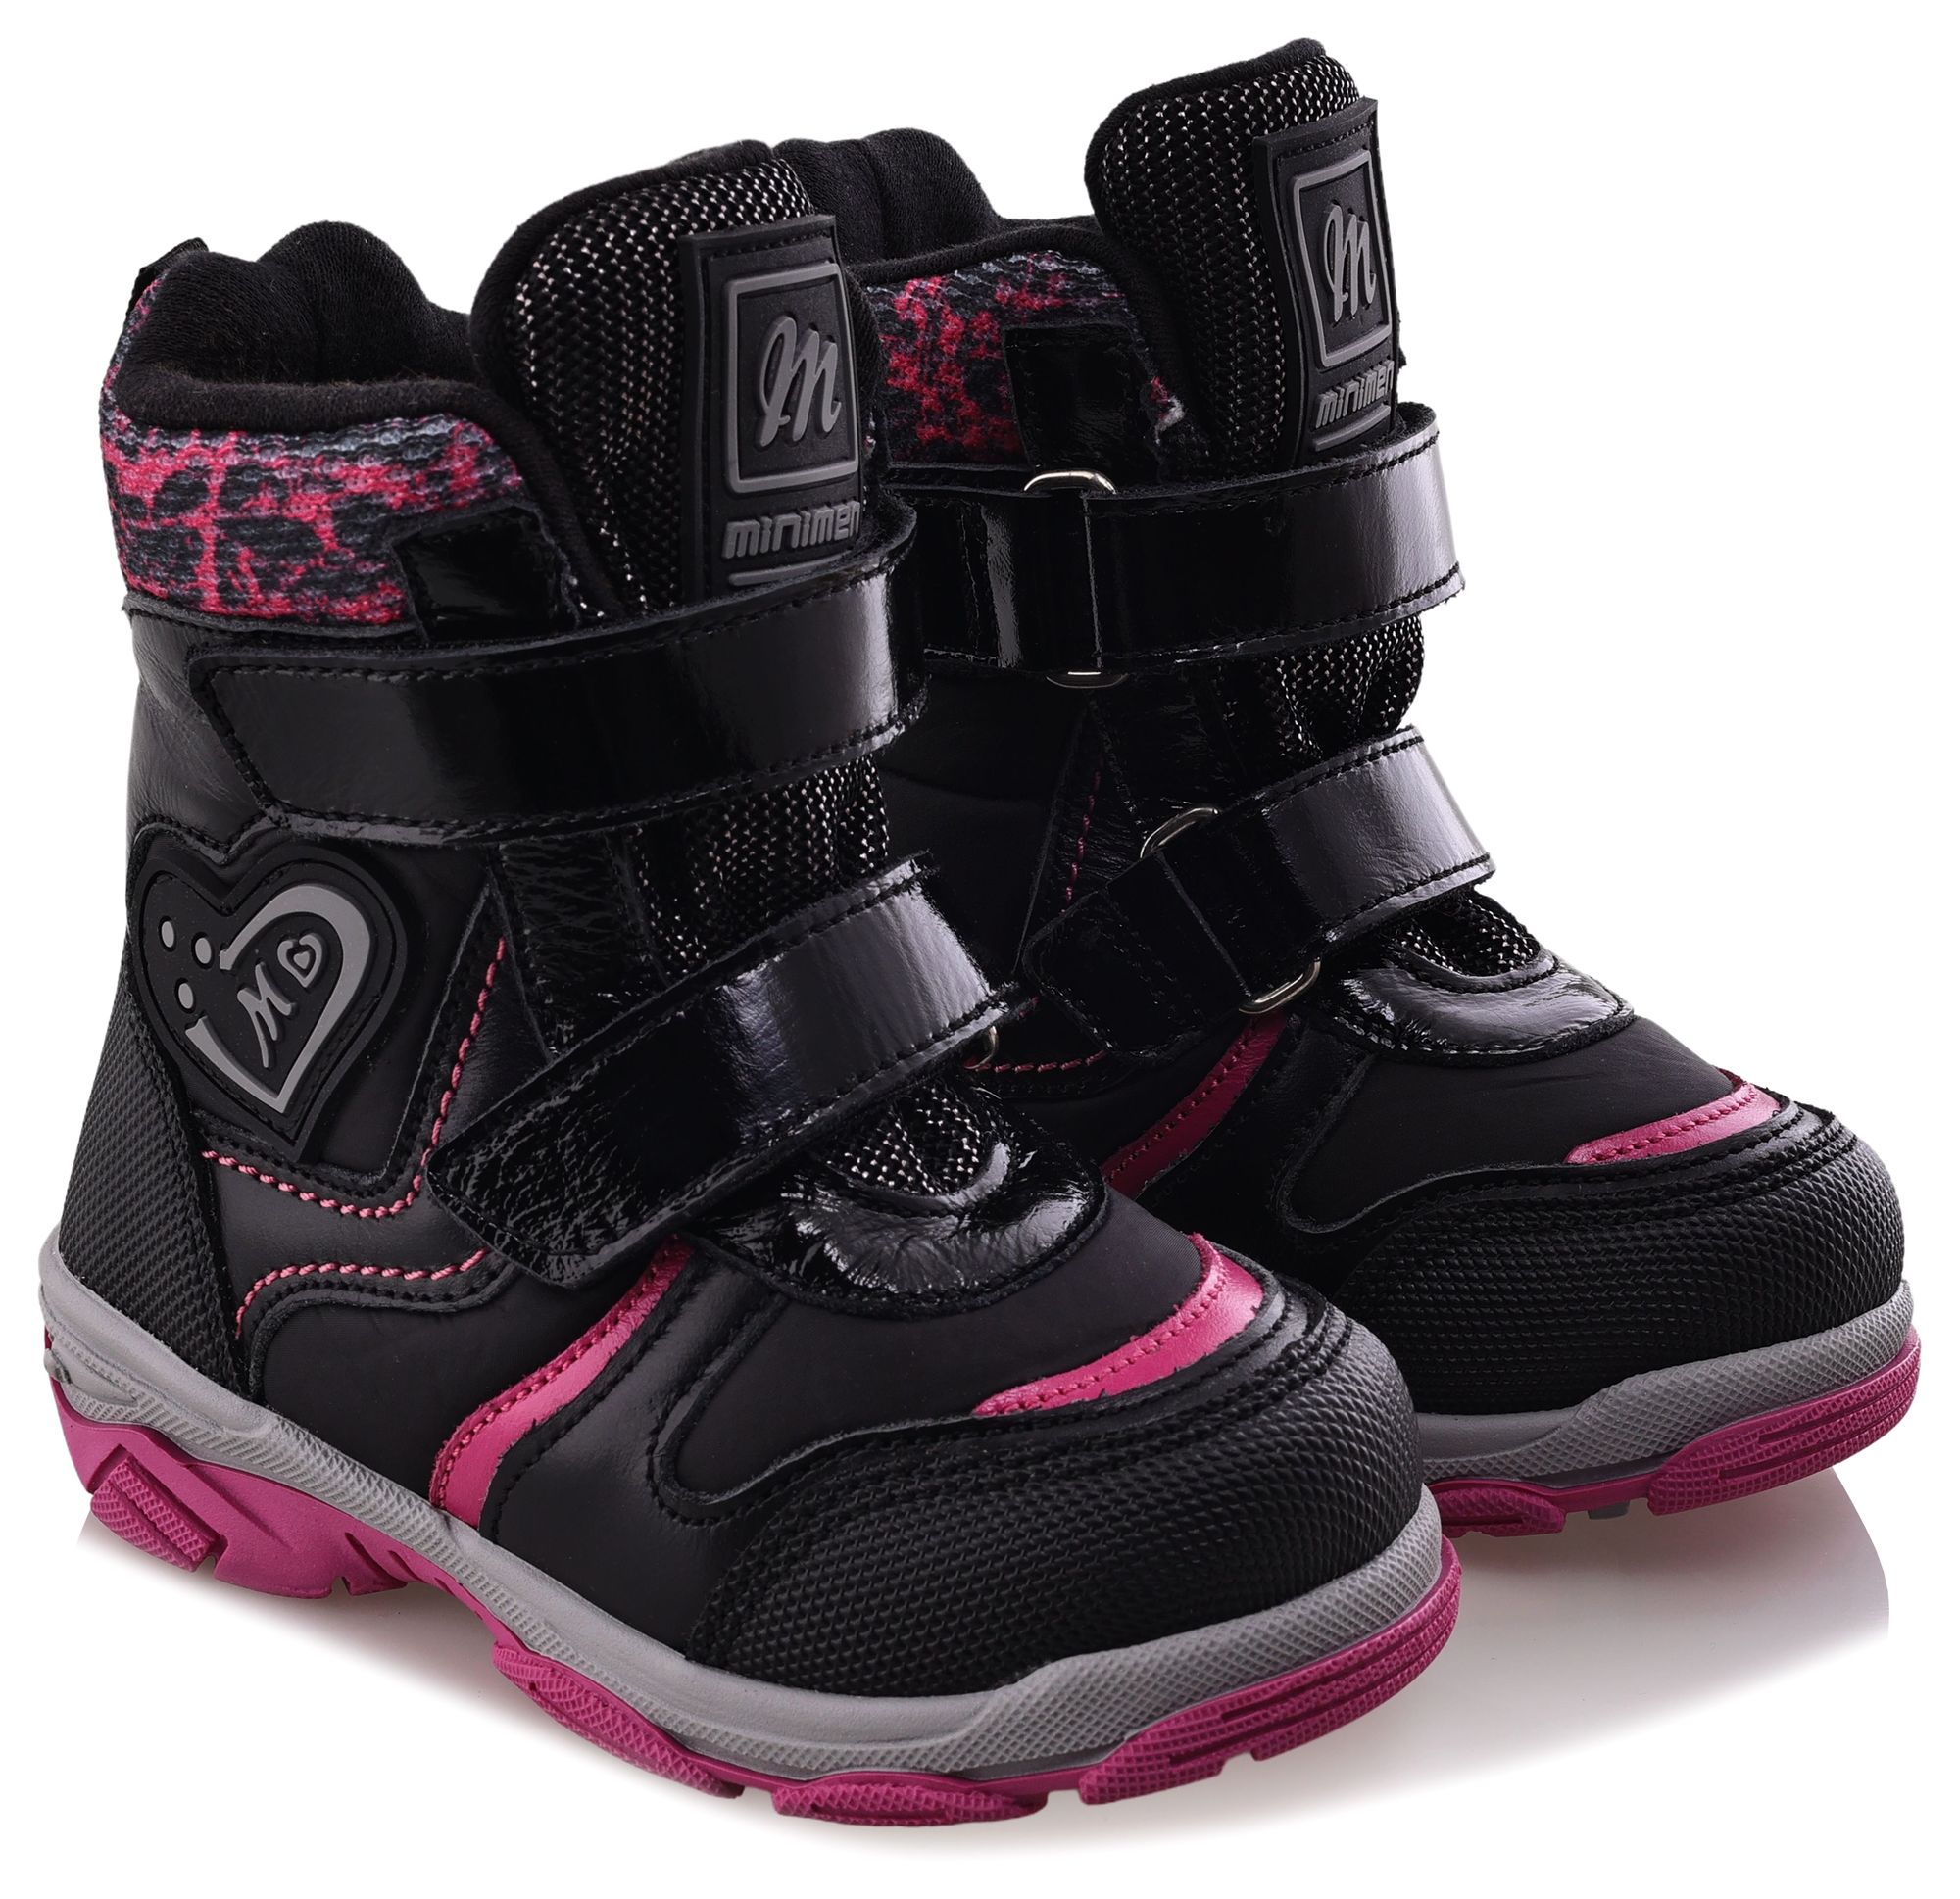 Ботинки Minimen для девочек, чёрные, размер 29, 2656-53-23B-01 ботинки minimen для девочек розовые размер 28 2656 53 23b 02